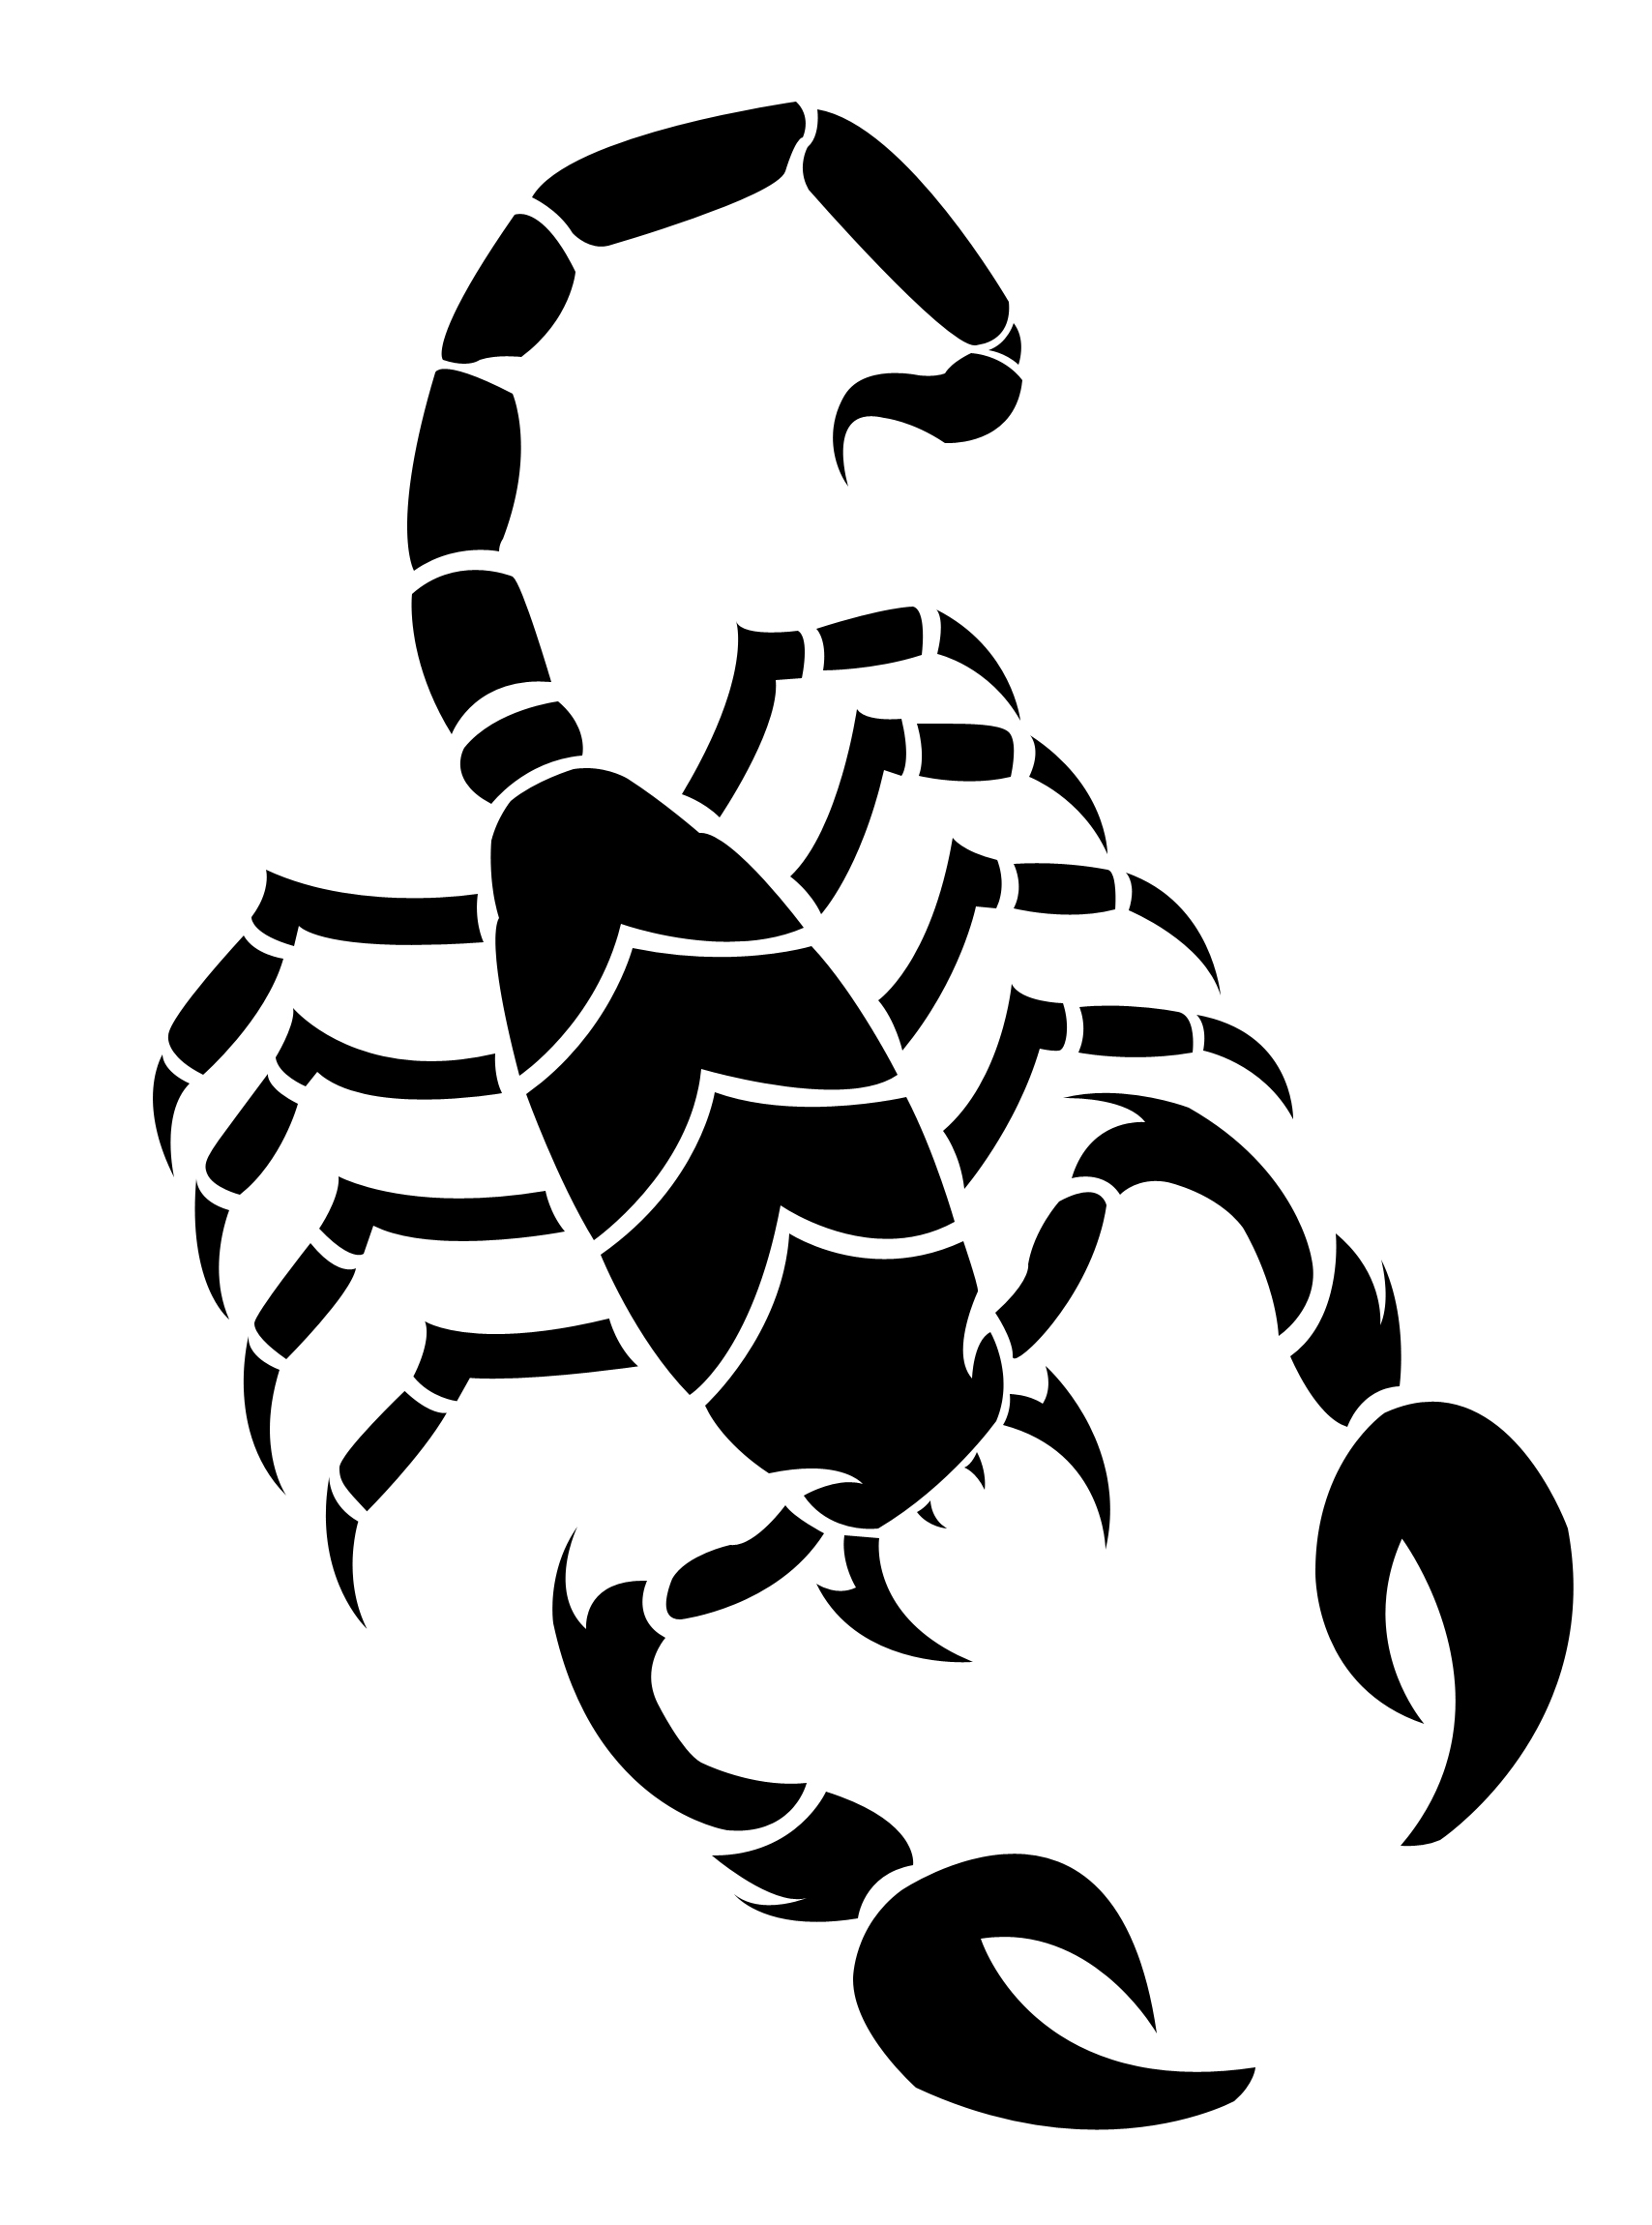 Thumbs Scorpion Tattoo Designs